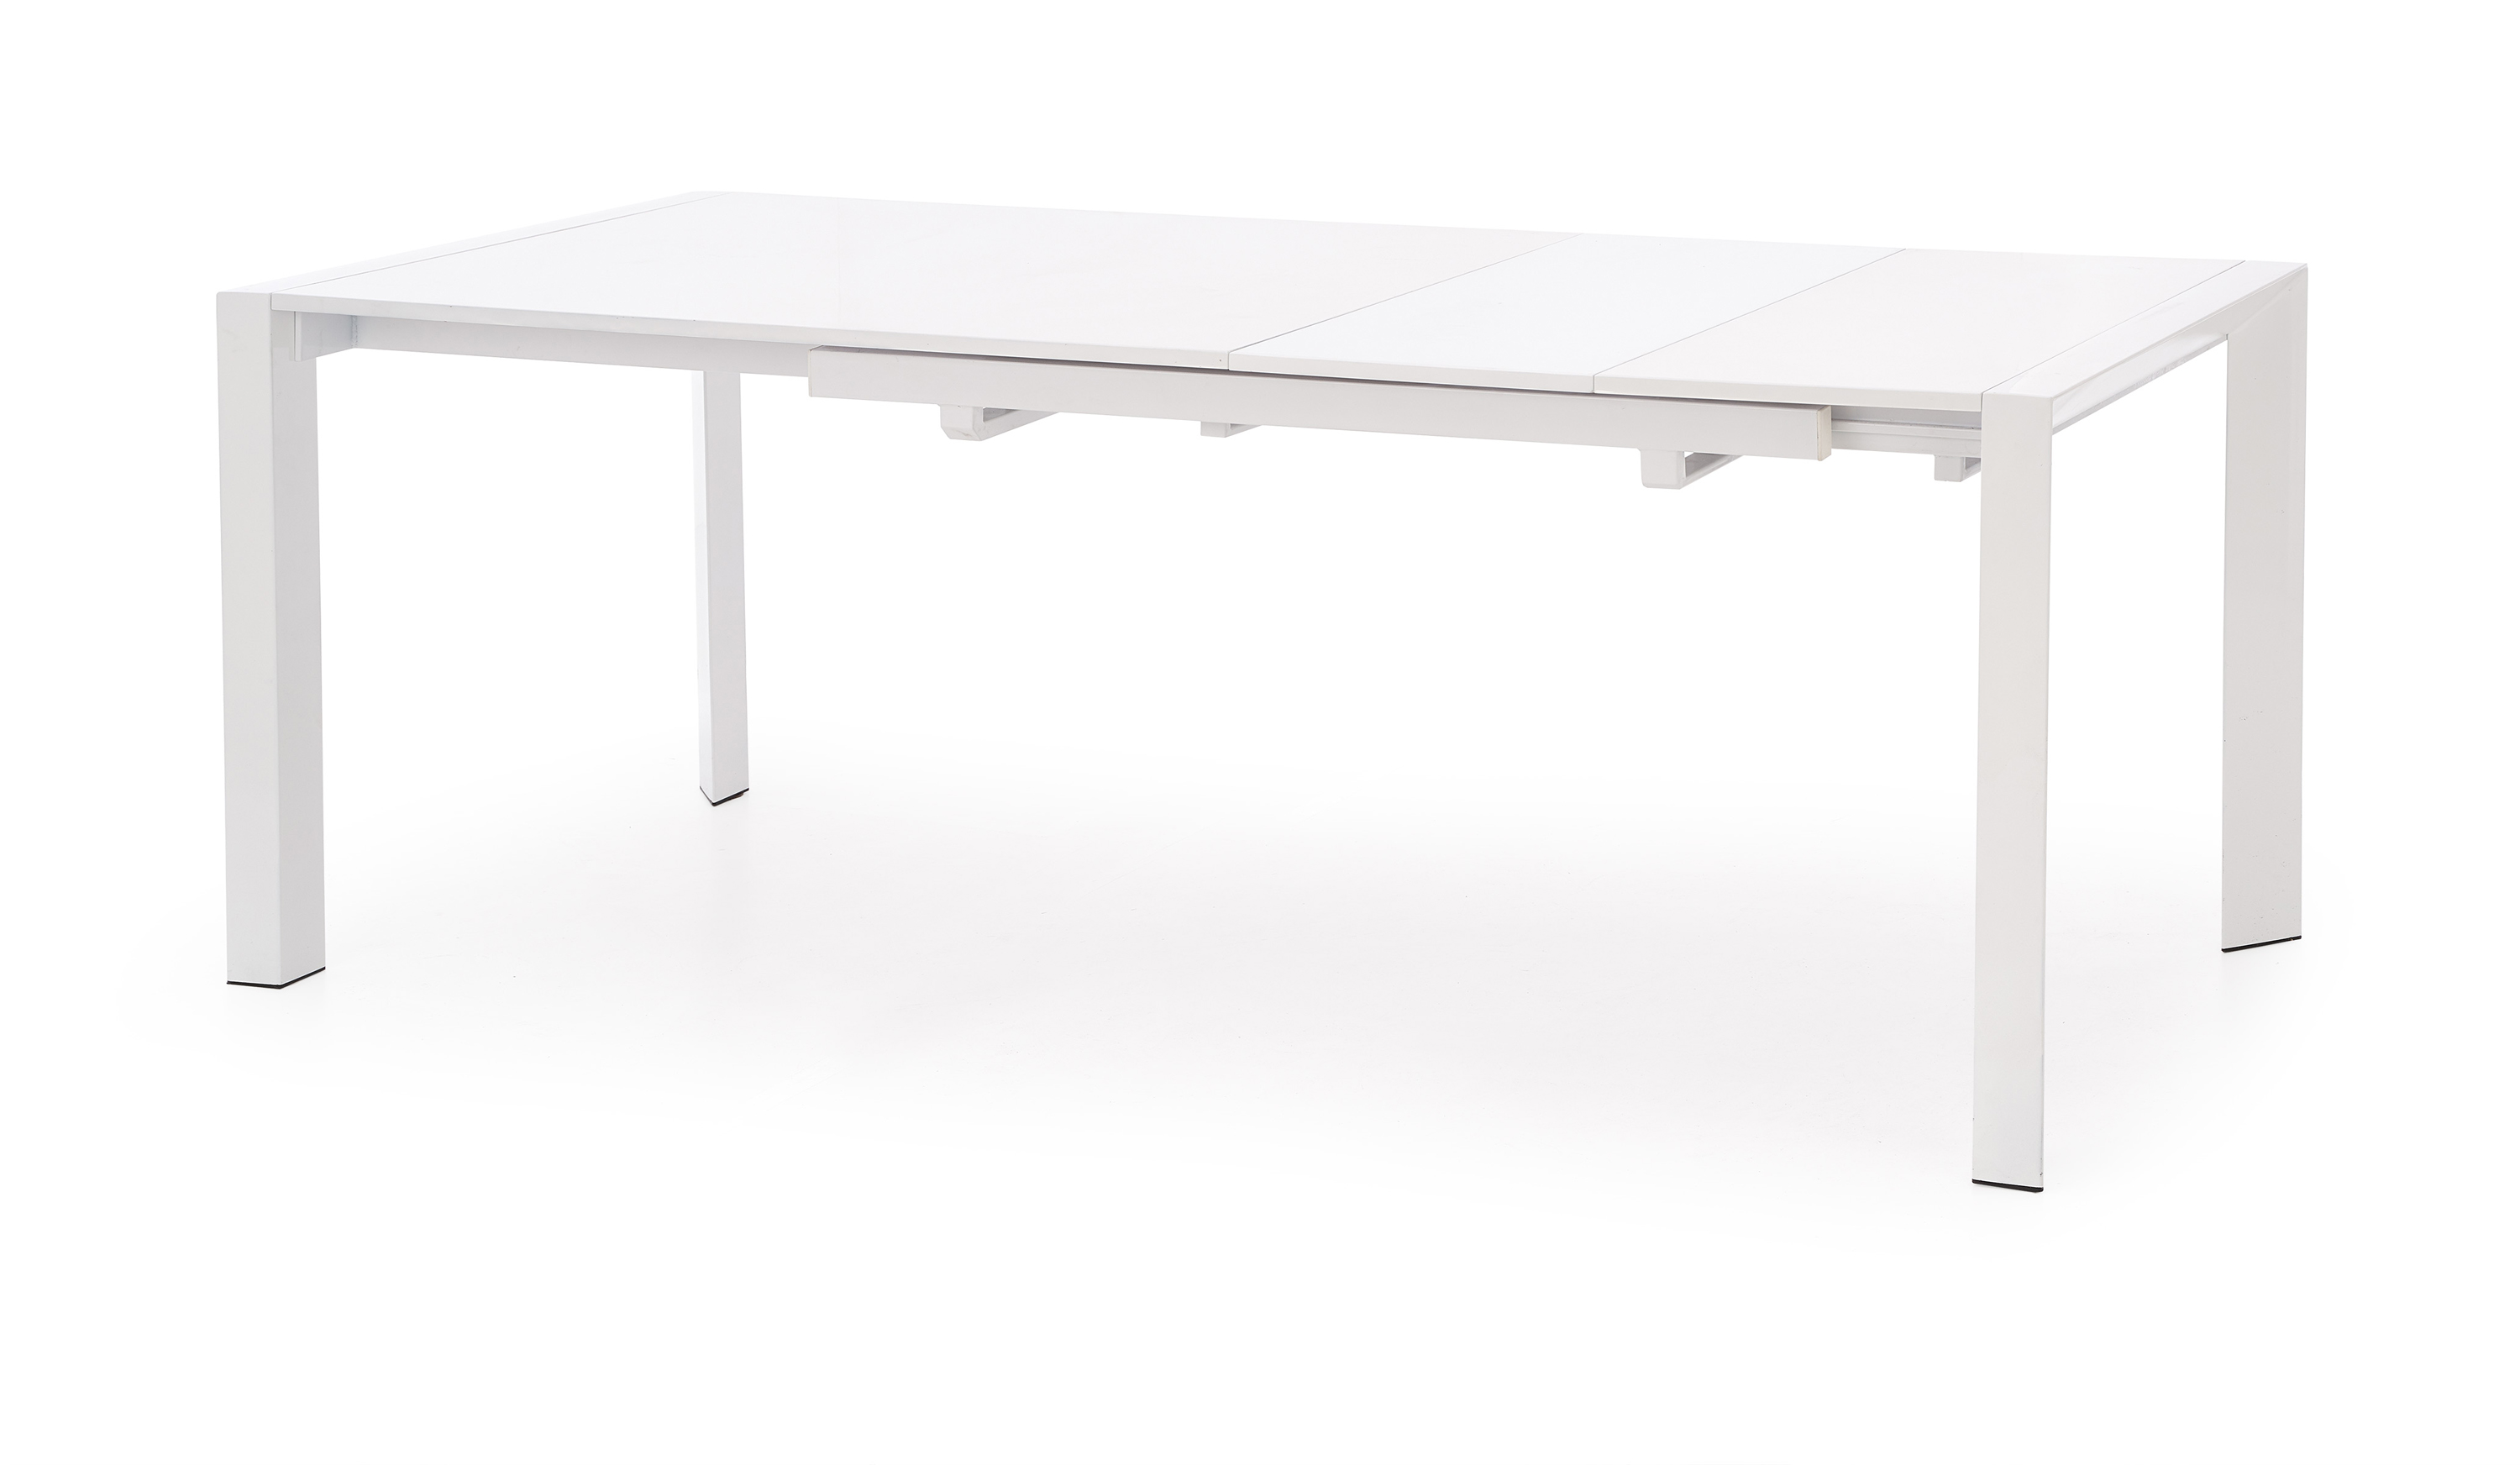 STANFORD XL stół rozkładany biały stanford xl stół rozkładany biały